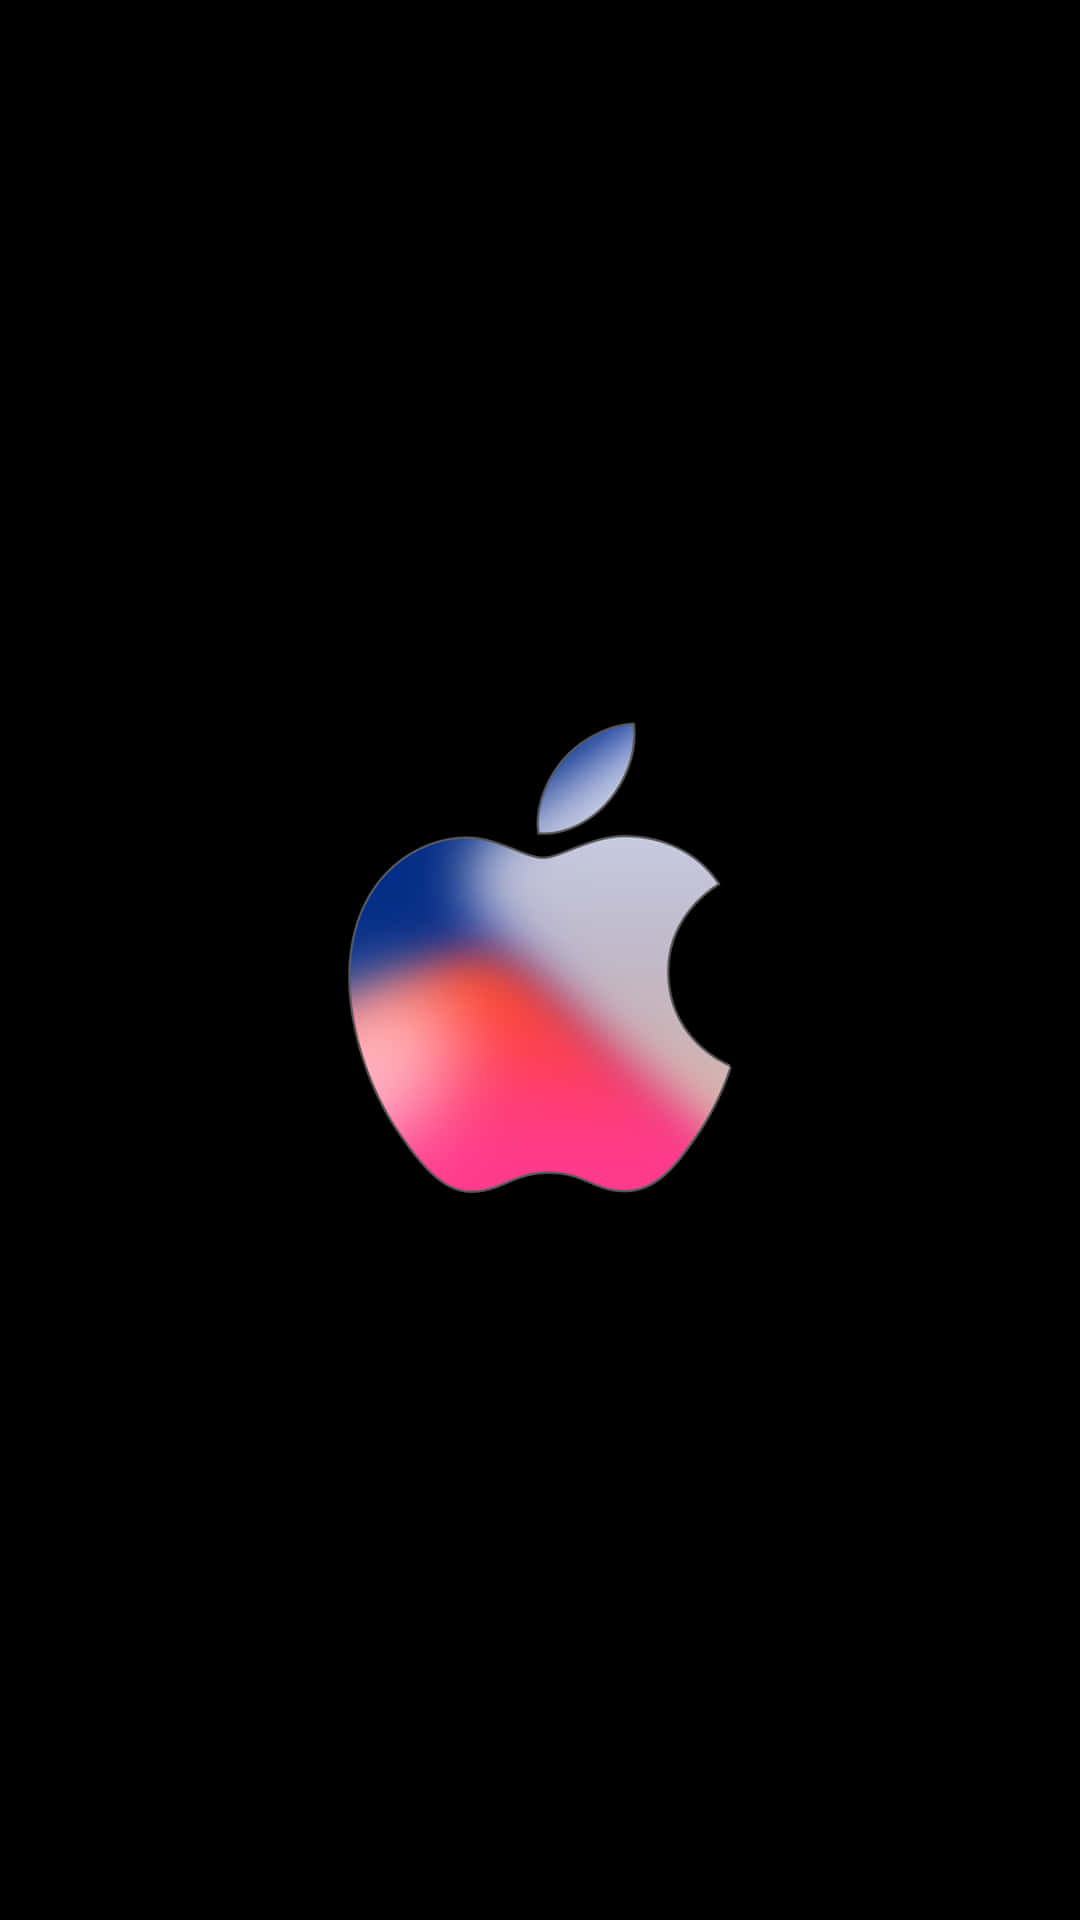 Blåttoch Rosa Logotyp Fantastisk Apple Hd Iphone. Wallpaper